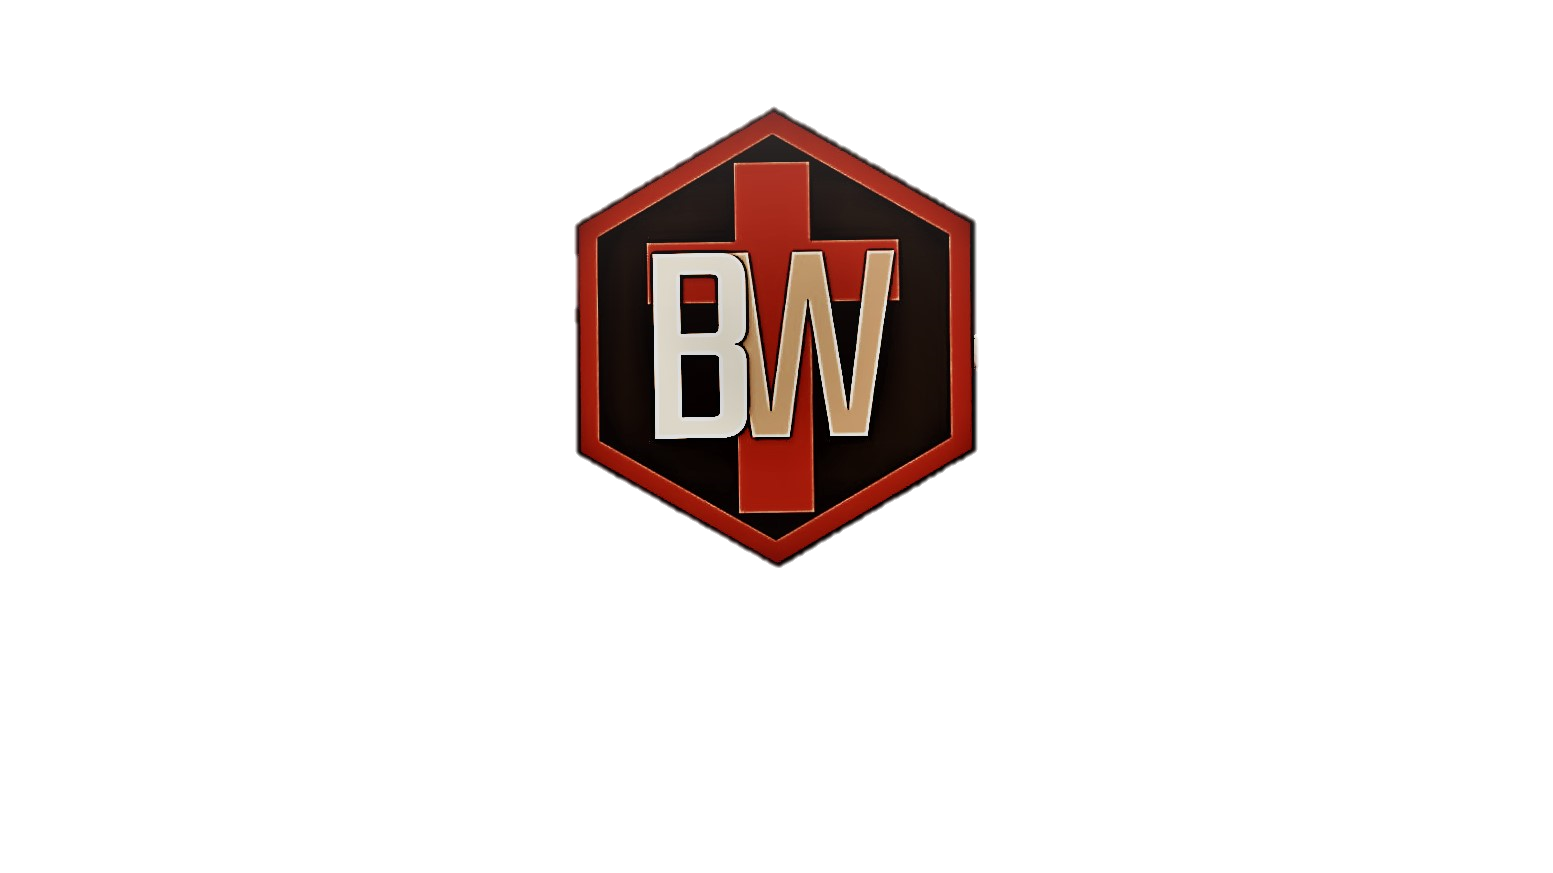 BrockWorks Logo